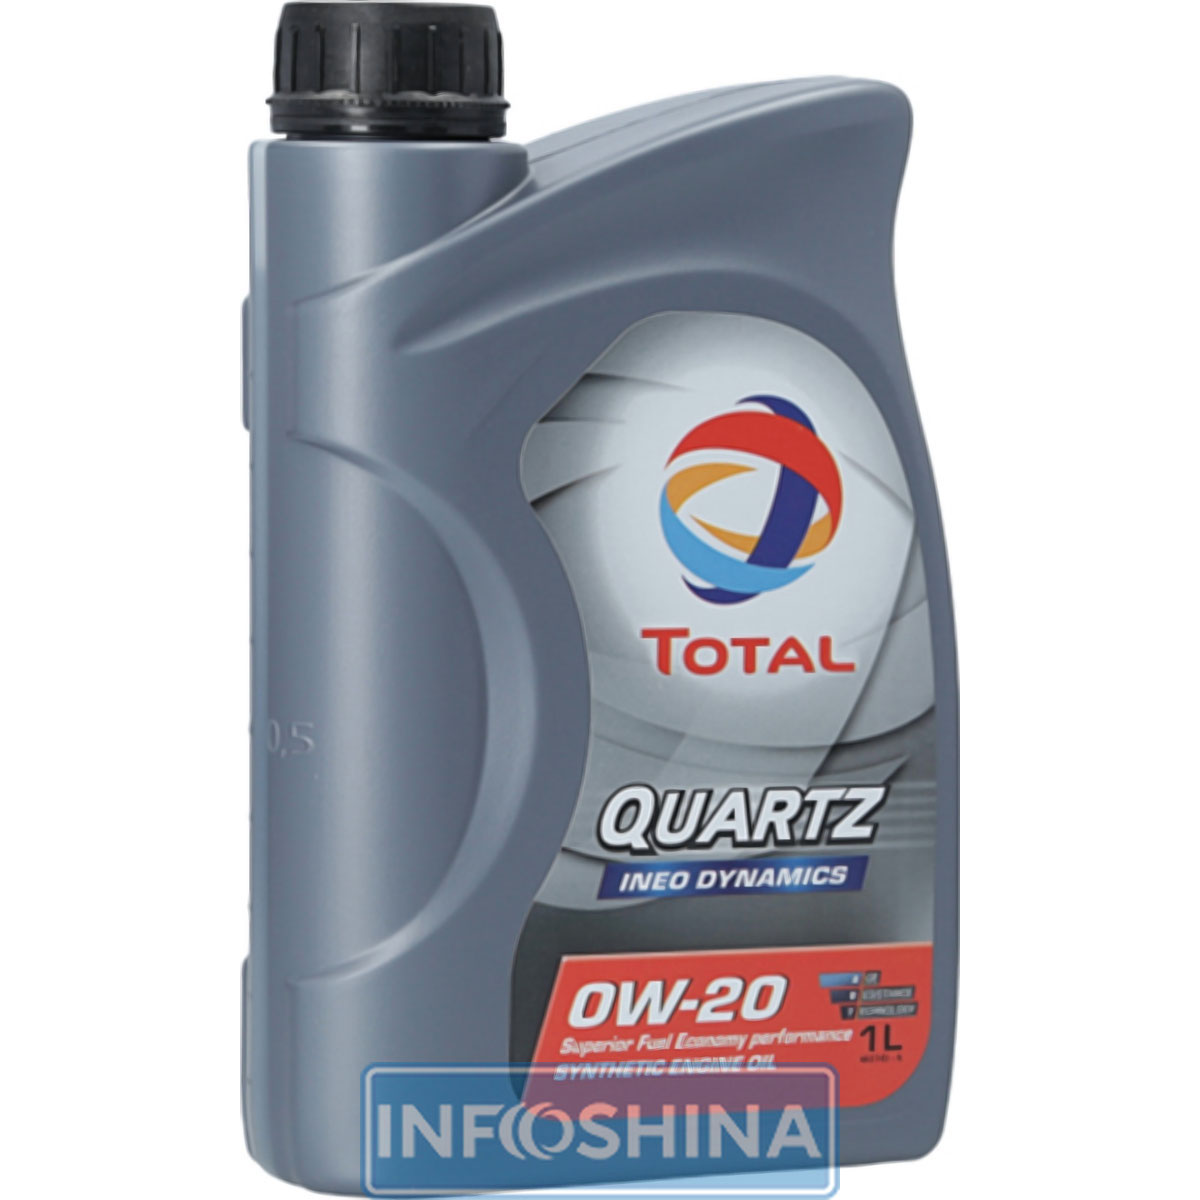 Total Quartz Ineo Dynamics 0W-20